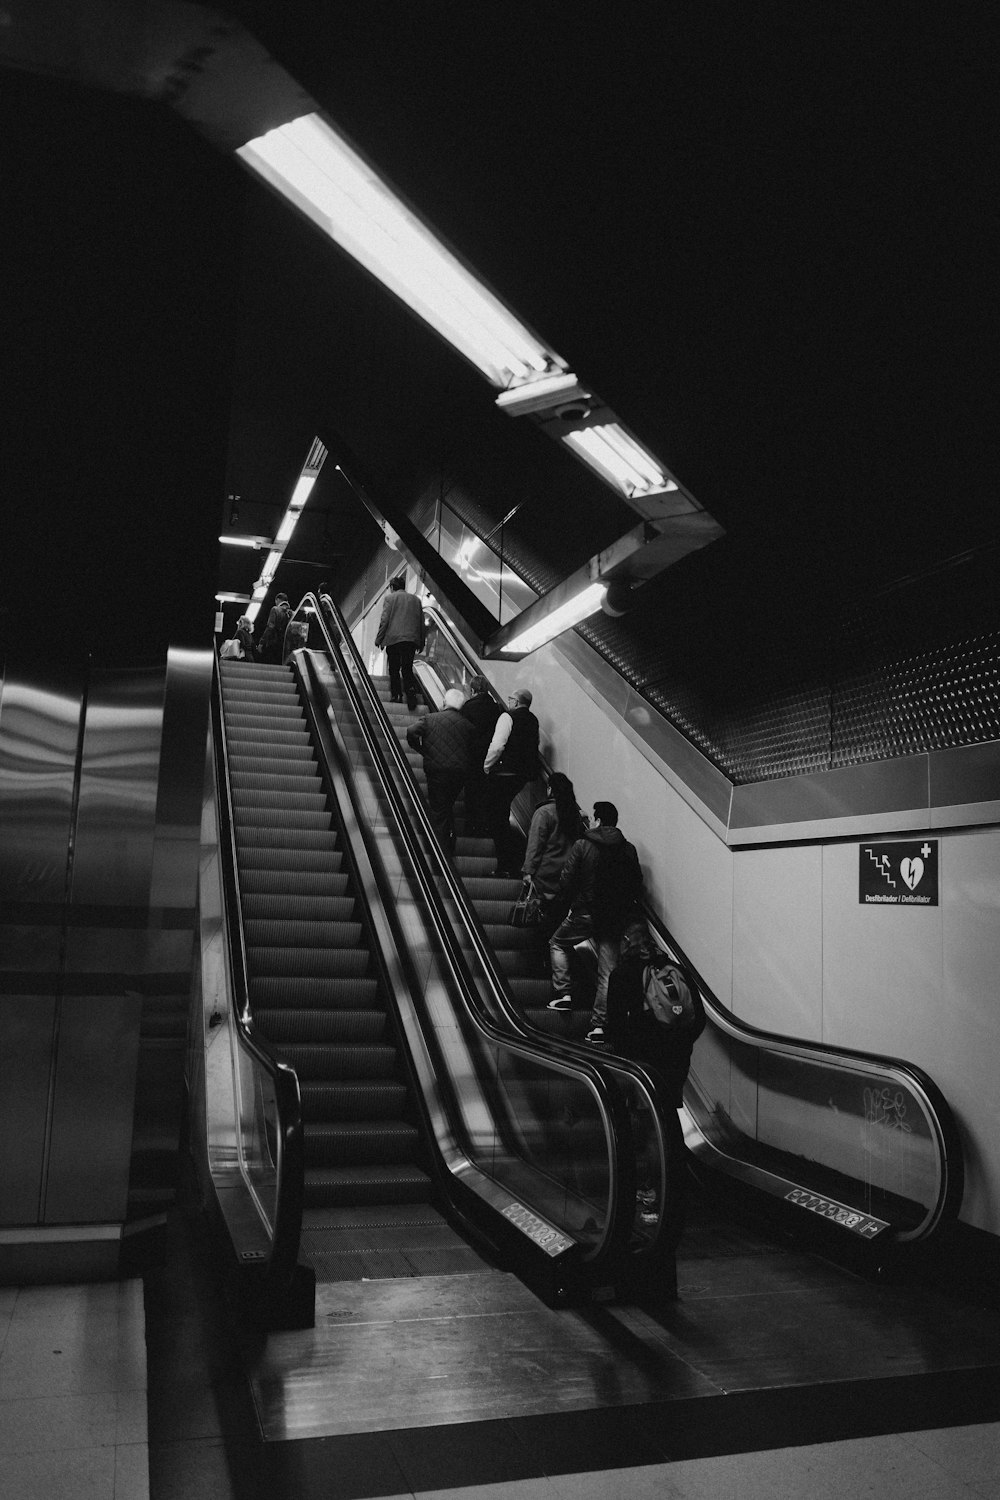 greyscale photo of people standing on subway escalator